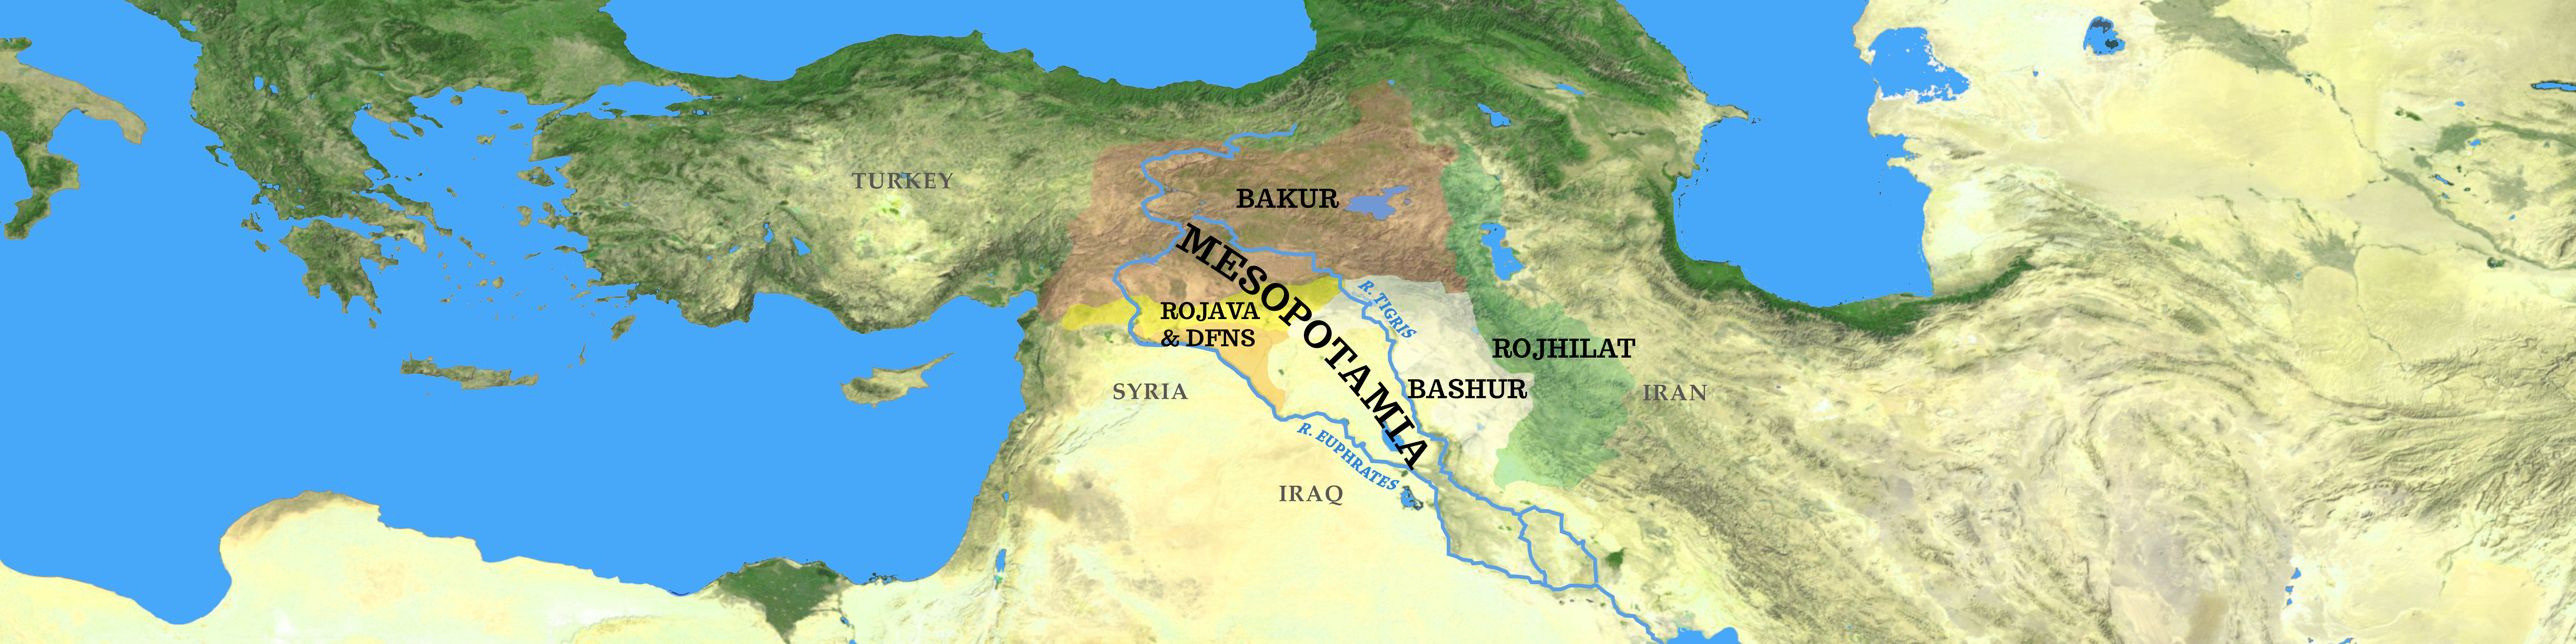 WHERE IS MESOPOTAMIA? – Co-operation in Mesopotamia